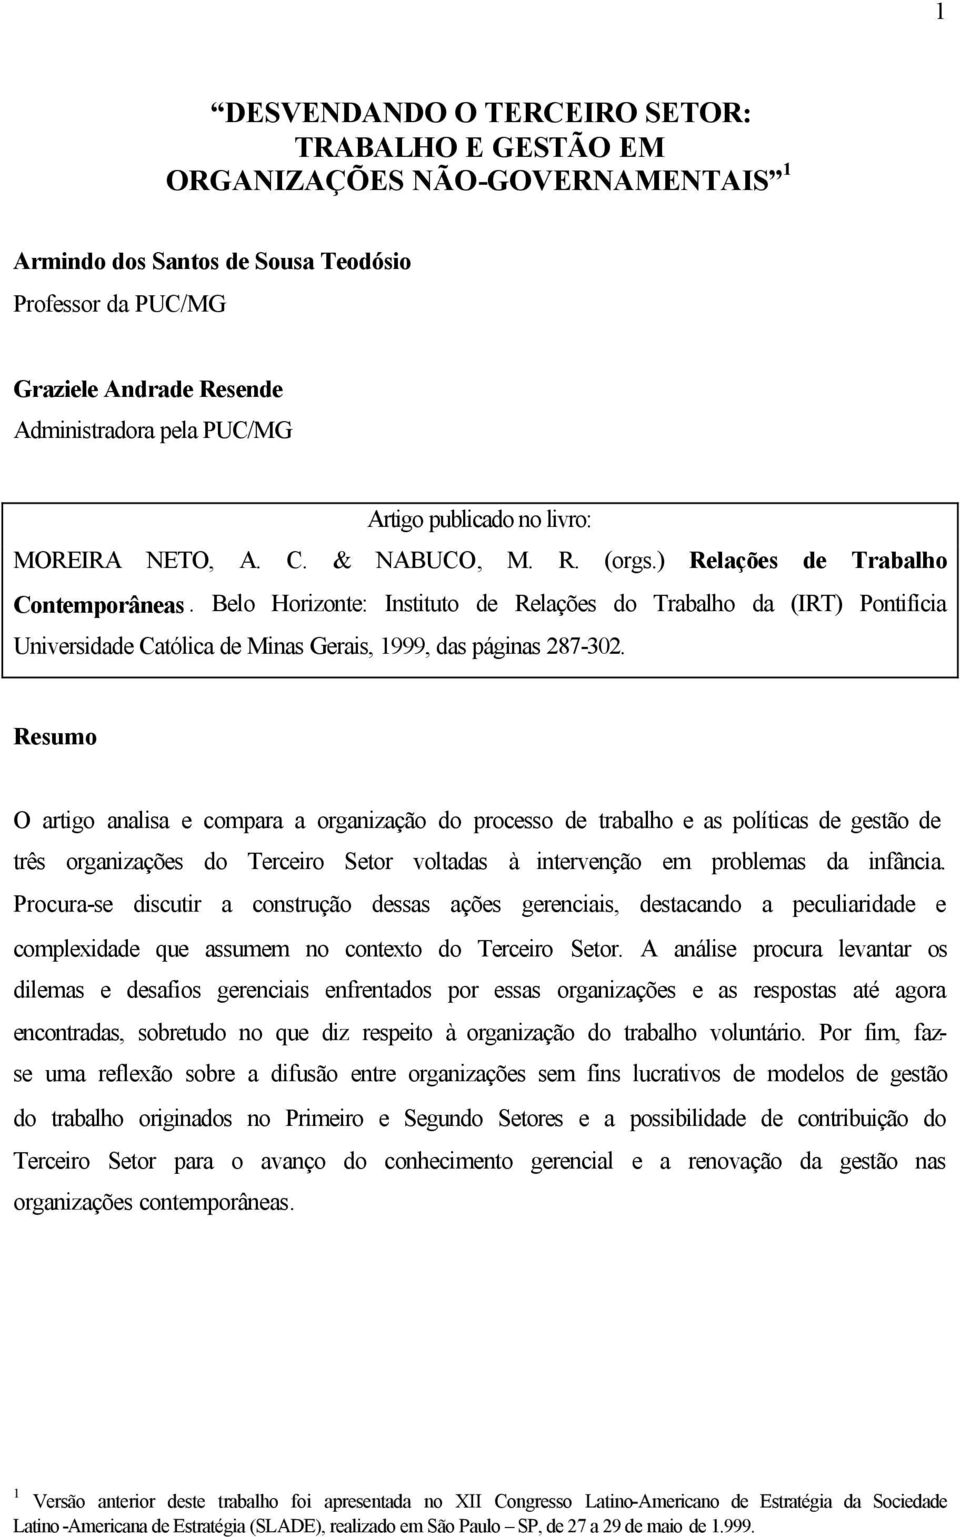 Belo Horizonte: Instituto de Relações do Trabalho da (IRT) Pontifícia Universidade Católica de Minas Gerais, 1999, das páginas 287-302.